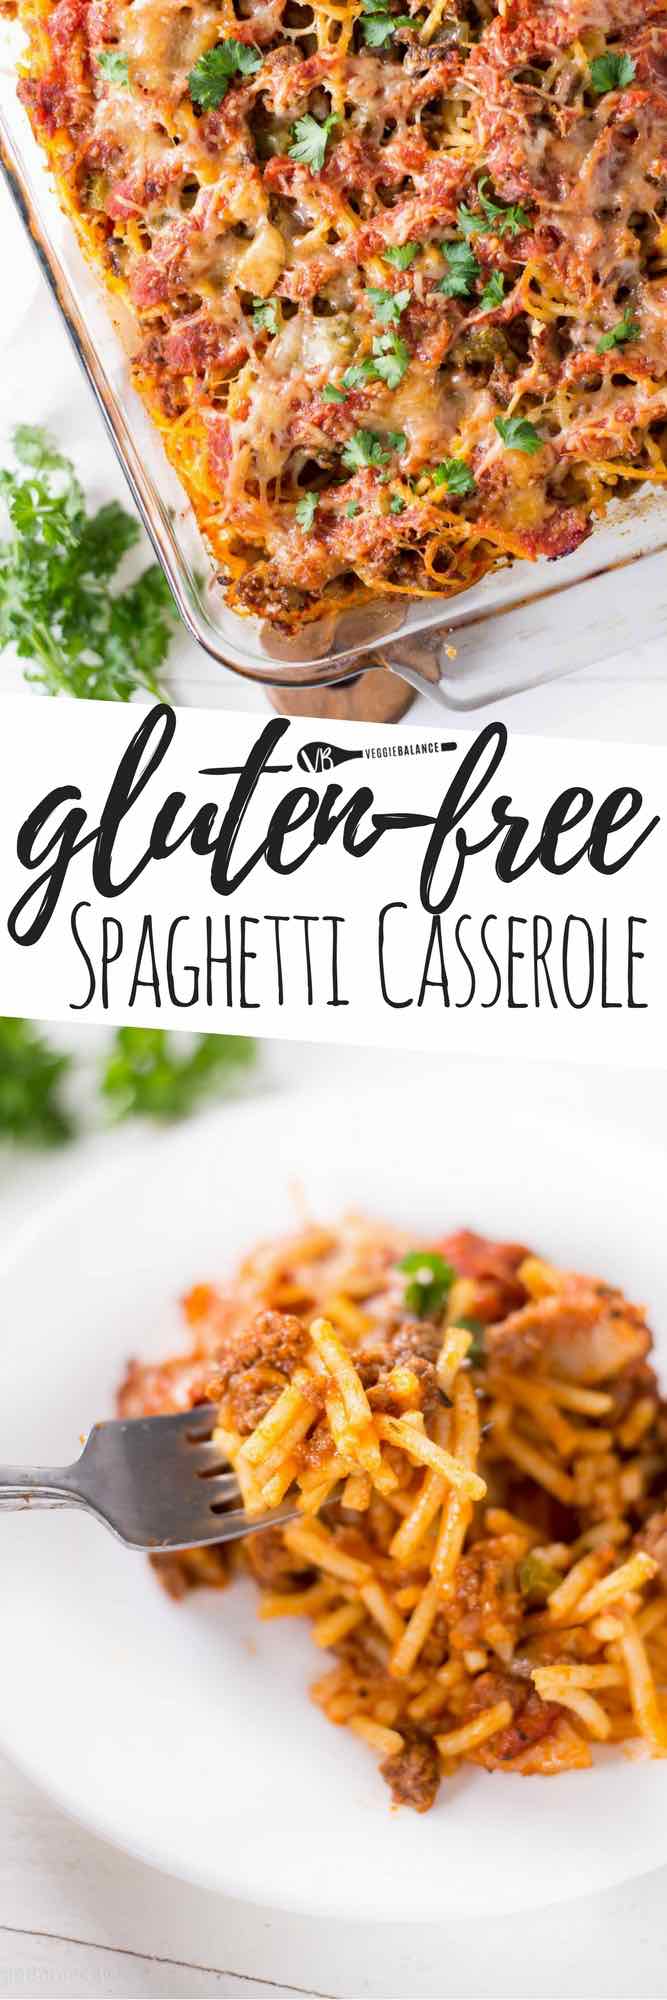 Easy & Delcious Baked Spaghetti Casserole (Gluten-Free) Recipe